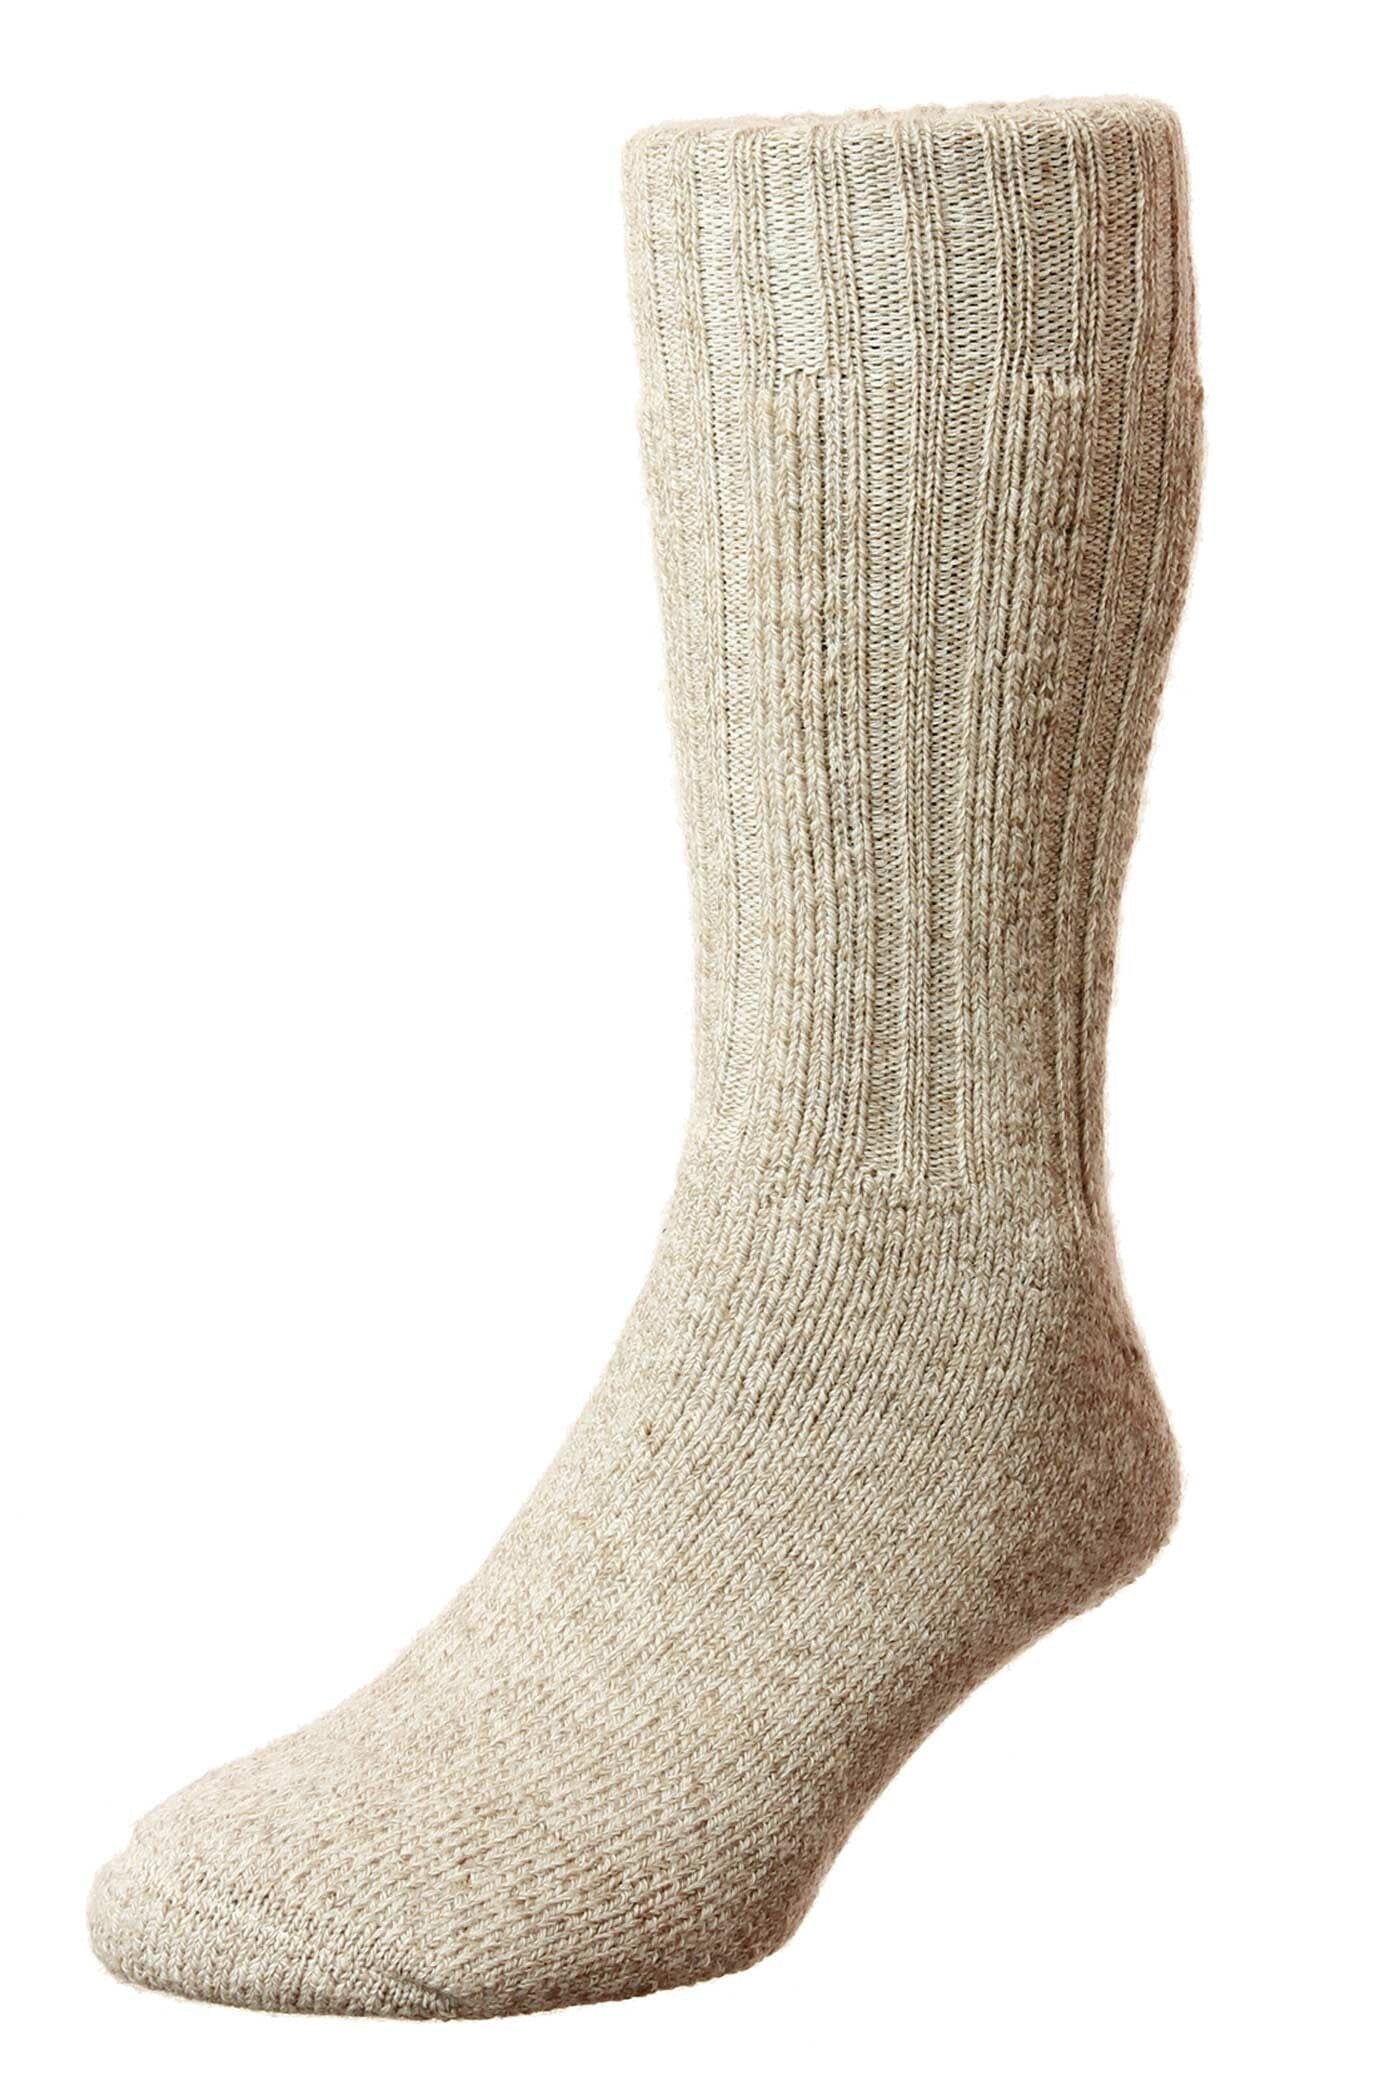 Merino Wool Boot Socks - Socks - Beige - THREADPEPPER